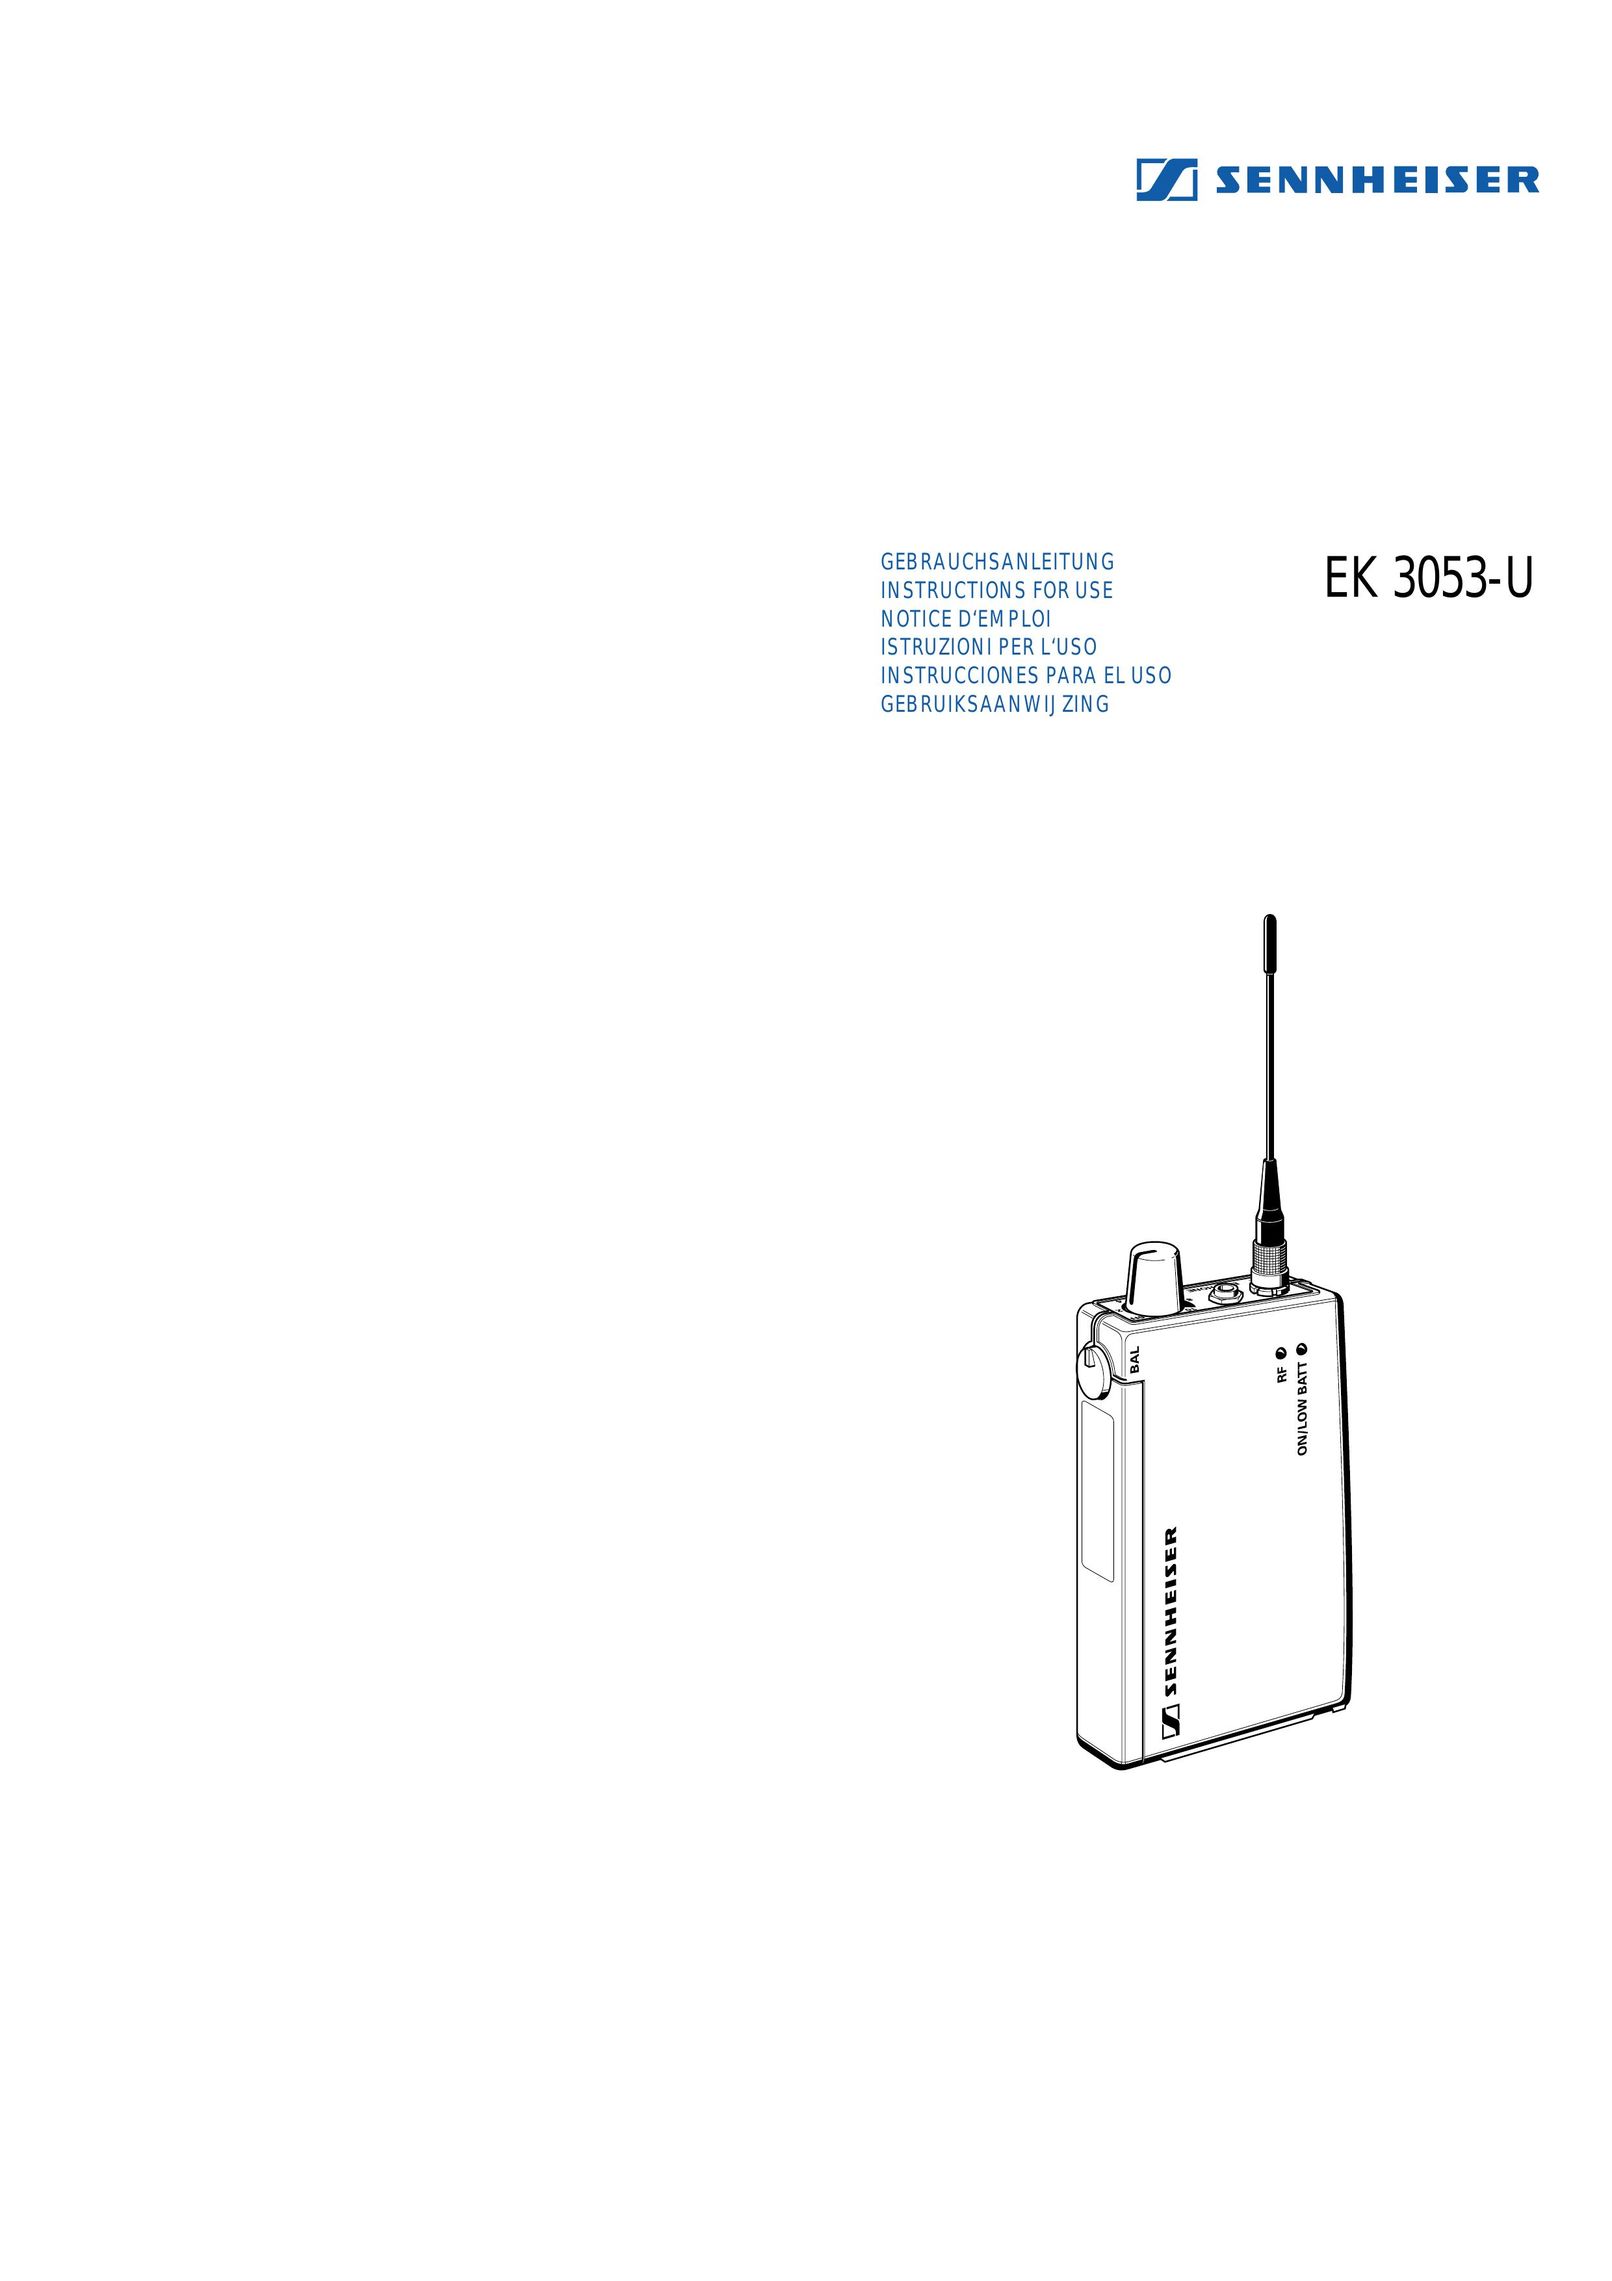 Sennheiser EK 3053-U Two-Way Radio User Manual